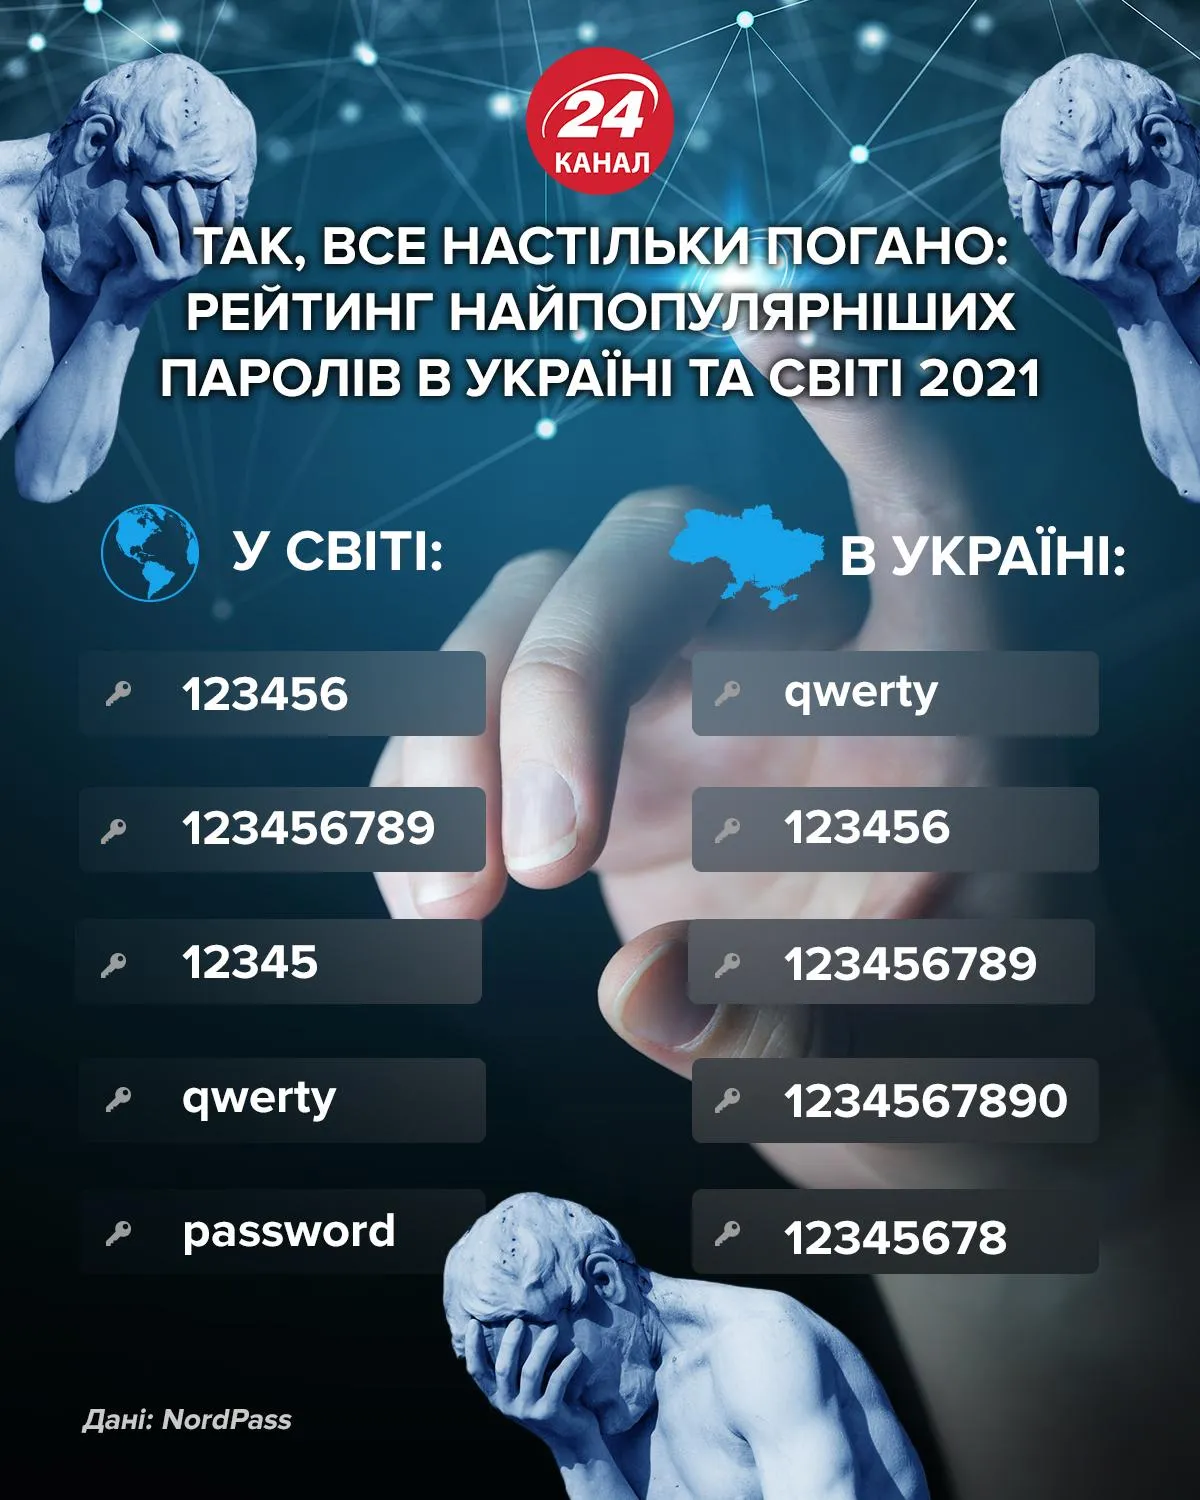 ​Пятерка самых популярных паролей в Украине и мире в 2021 году